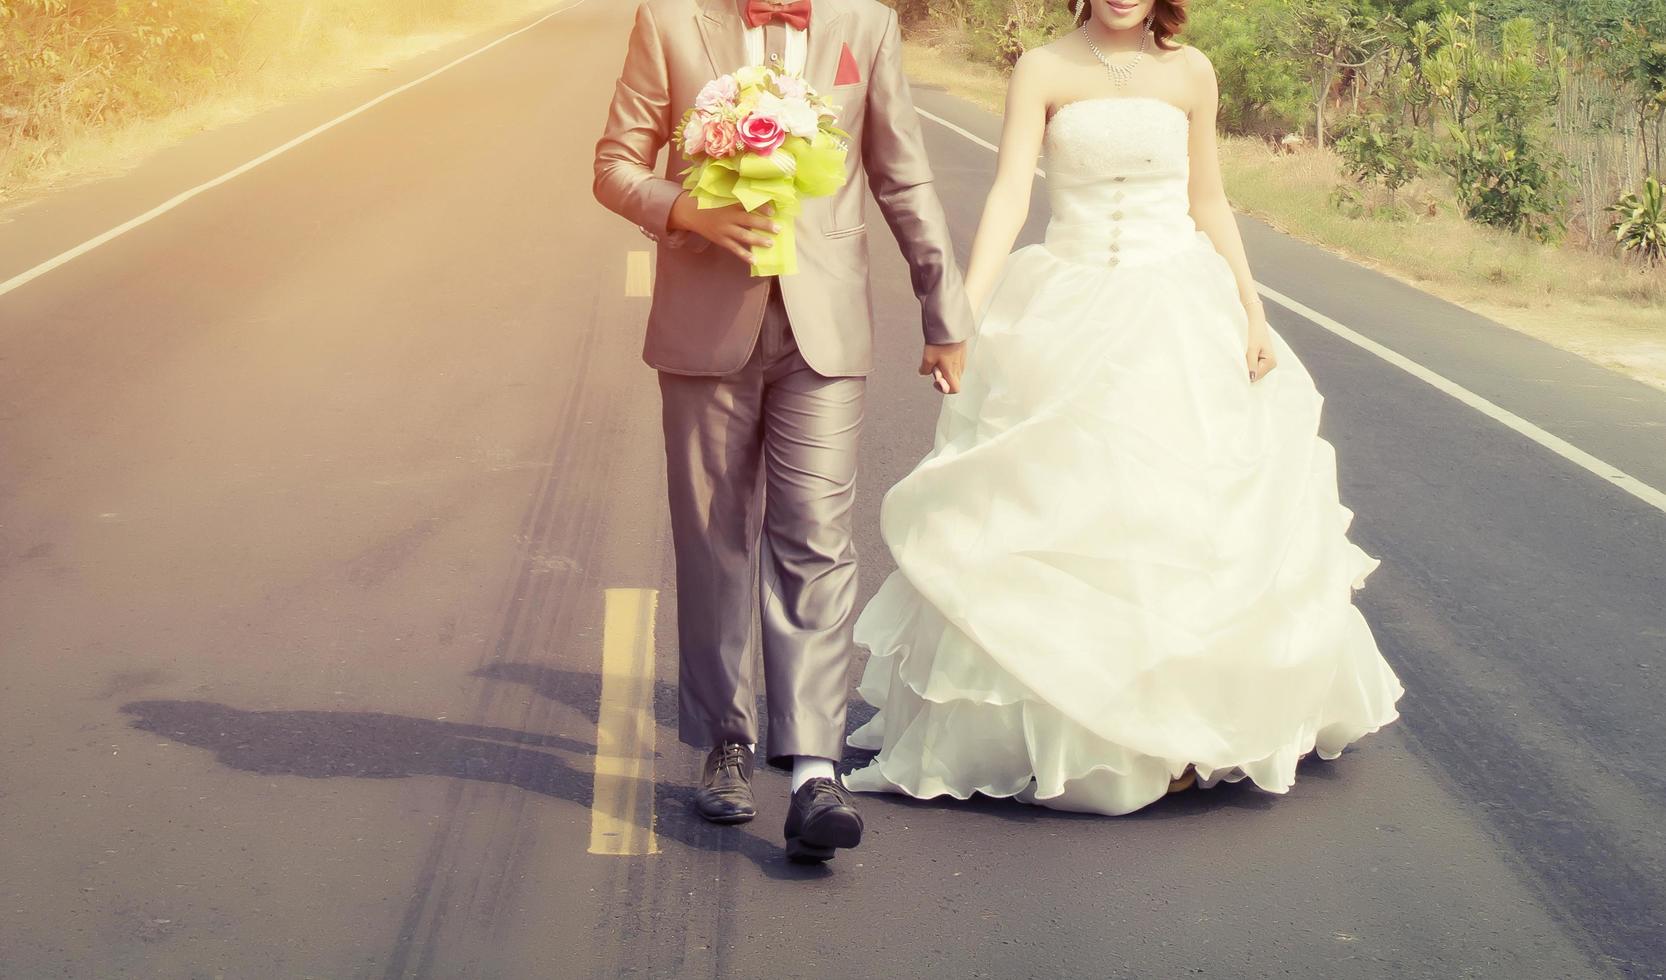 brudgummen och bruden som går på vägen går för att gifta sig foto